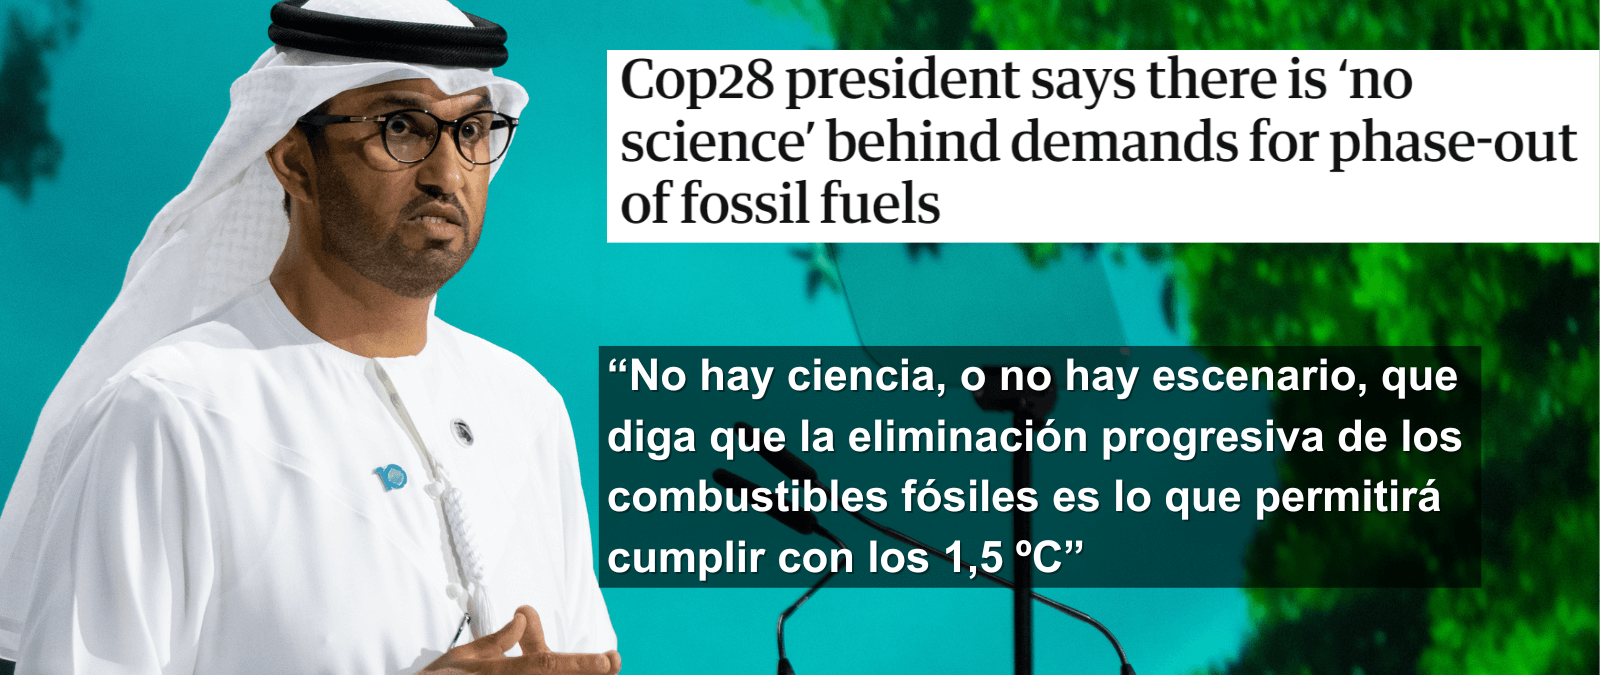 Qué ha dicho el presidente de la COP28 sobre la eliminación de los combustibles fósiles para frenar el cambio climático y qué indica la evidencia científica